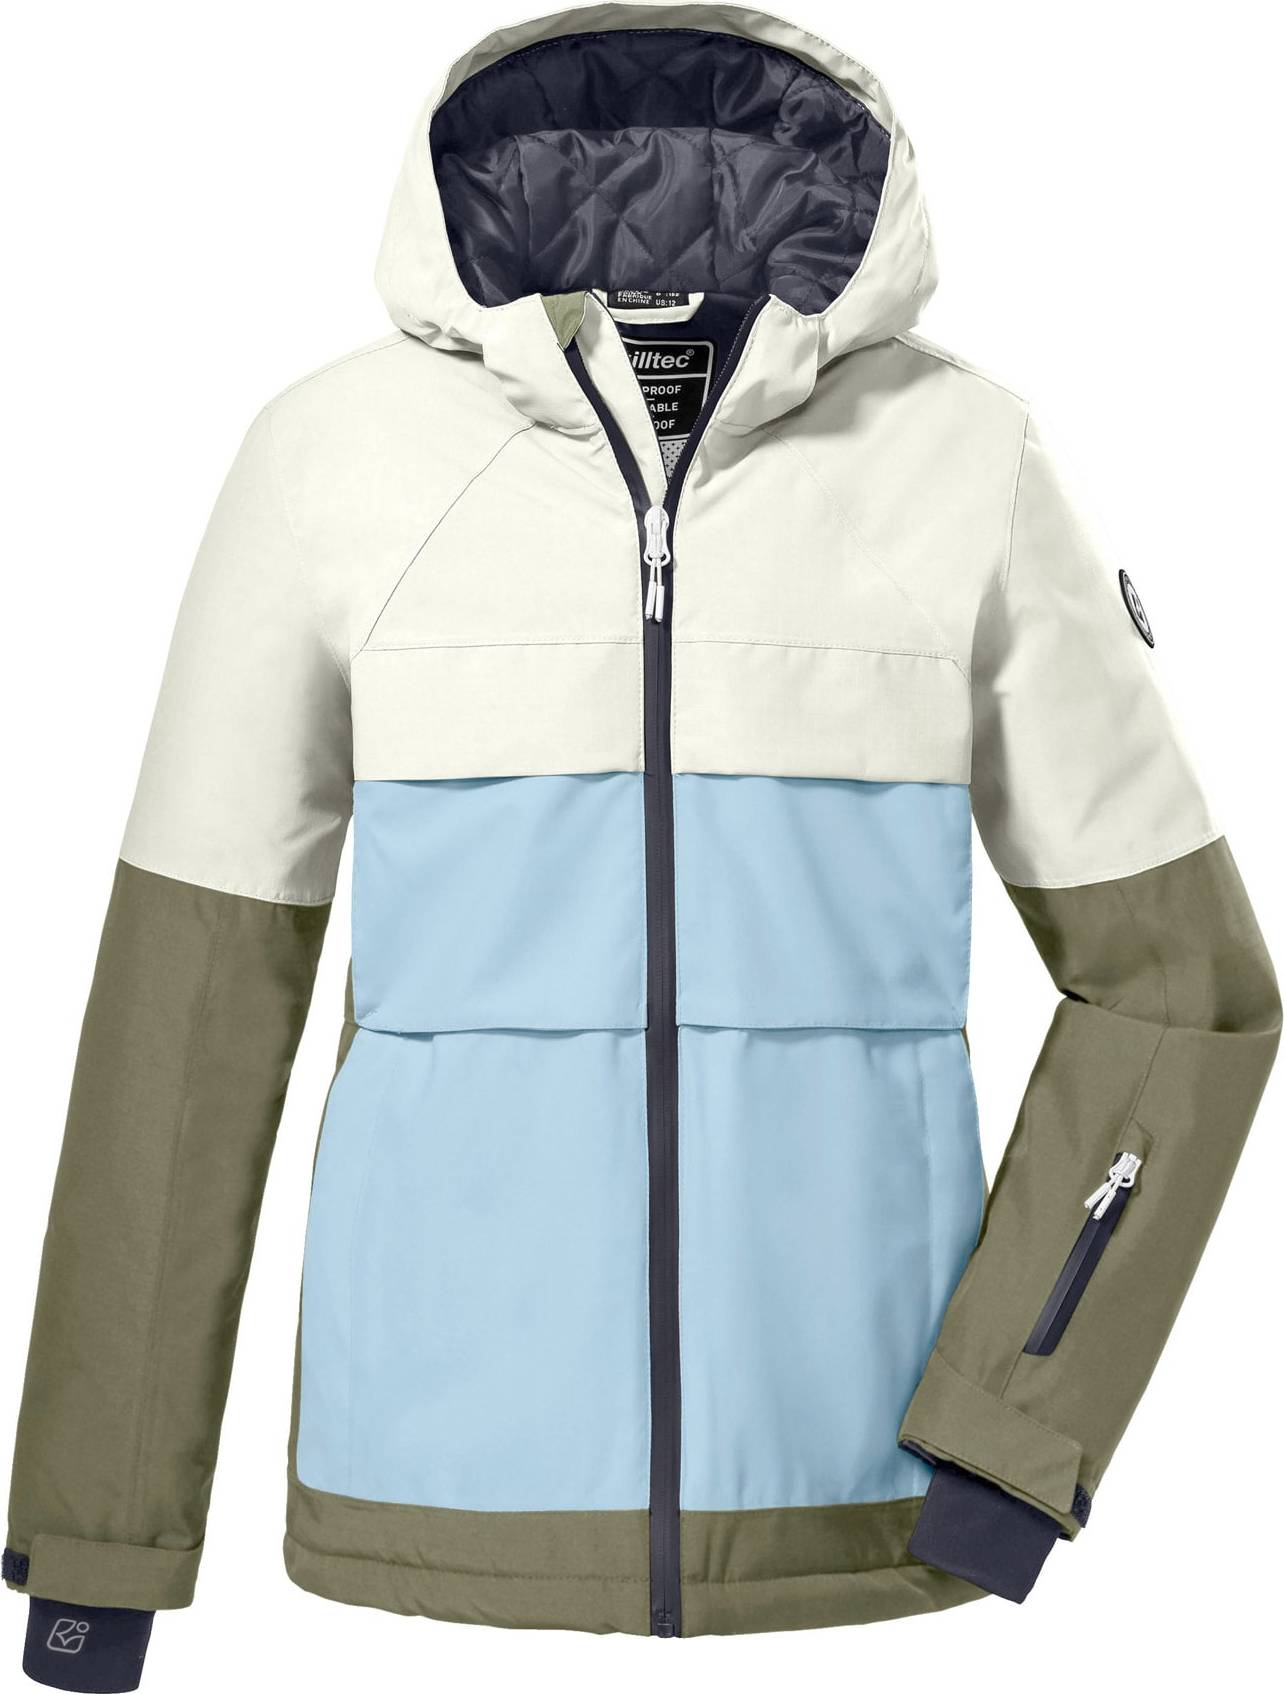 KILLTEC Outdoorová bunda námořnická modř / světlemodrá / khaki / přírodní bílá